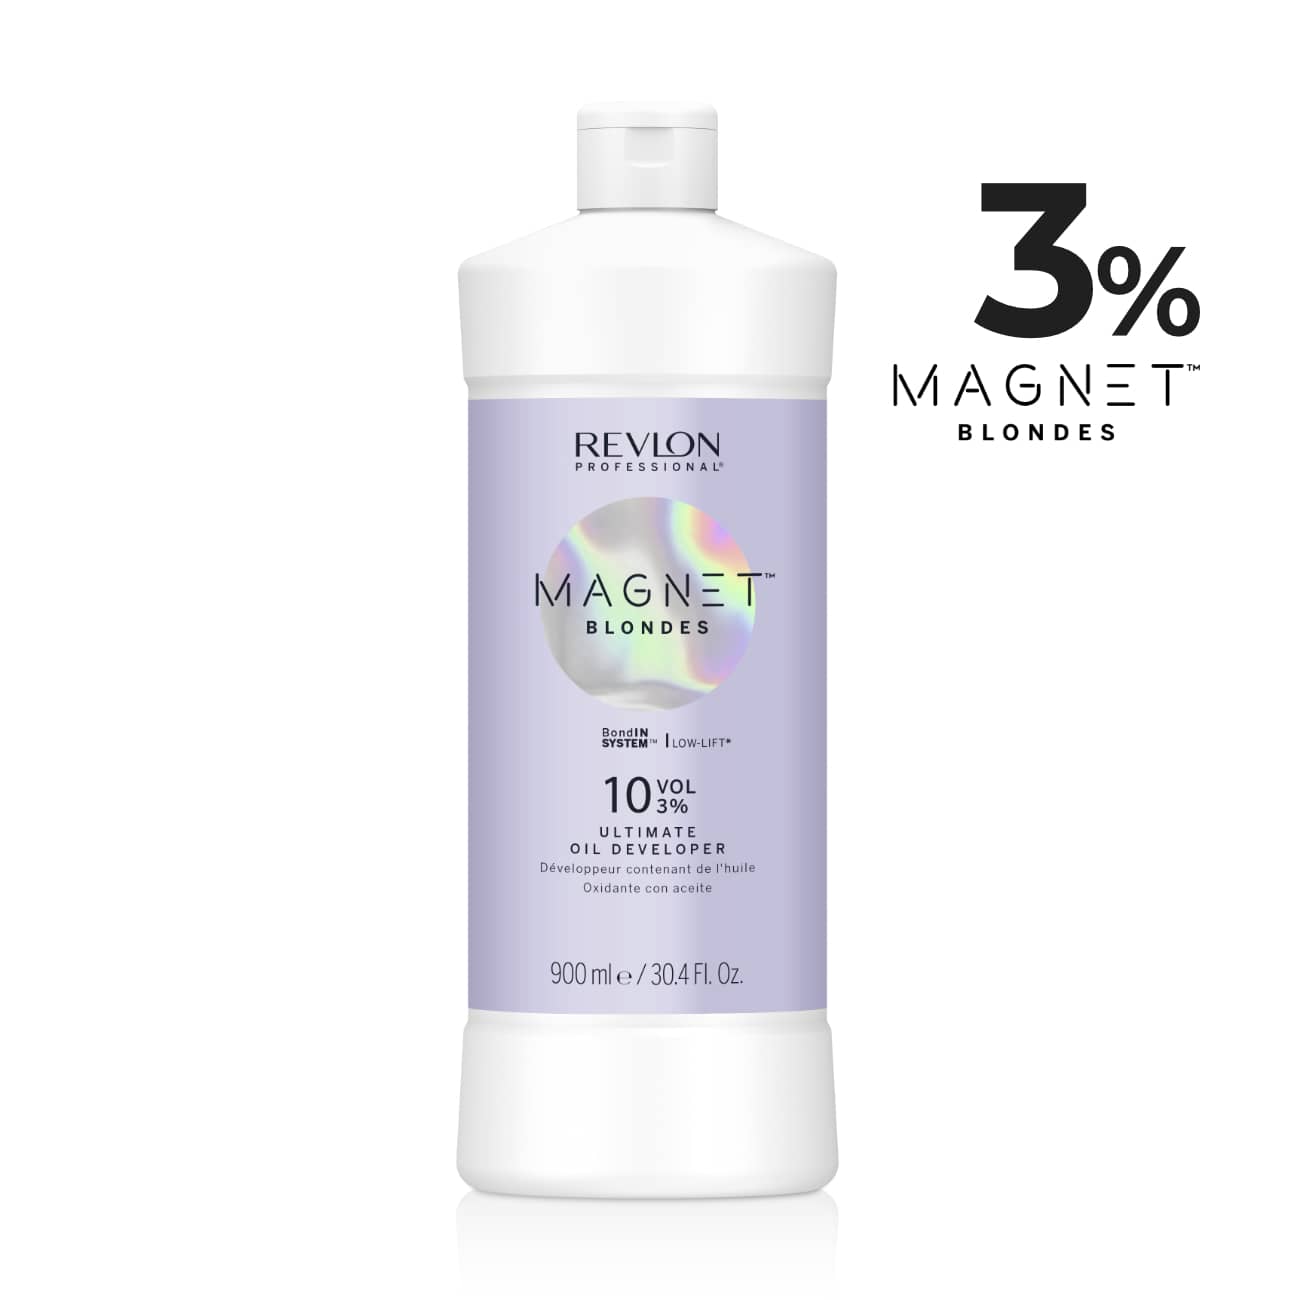 Magnet Blondes Oil Developer 10 Volume 3% - Sagema